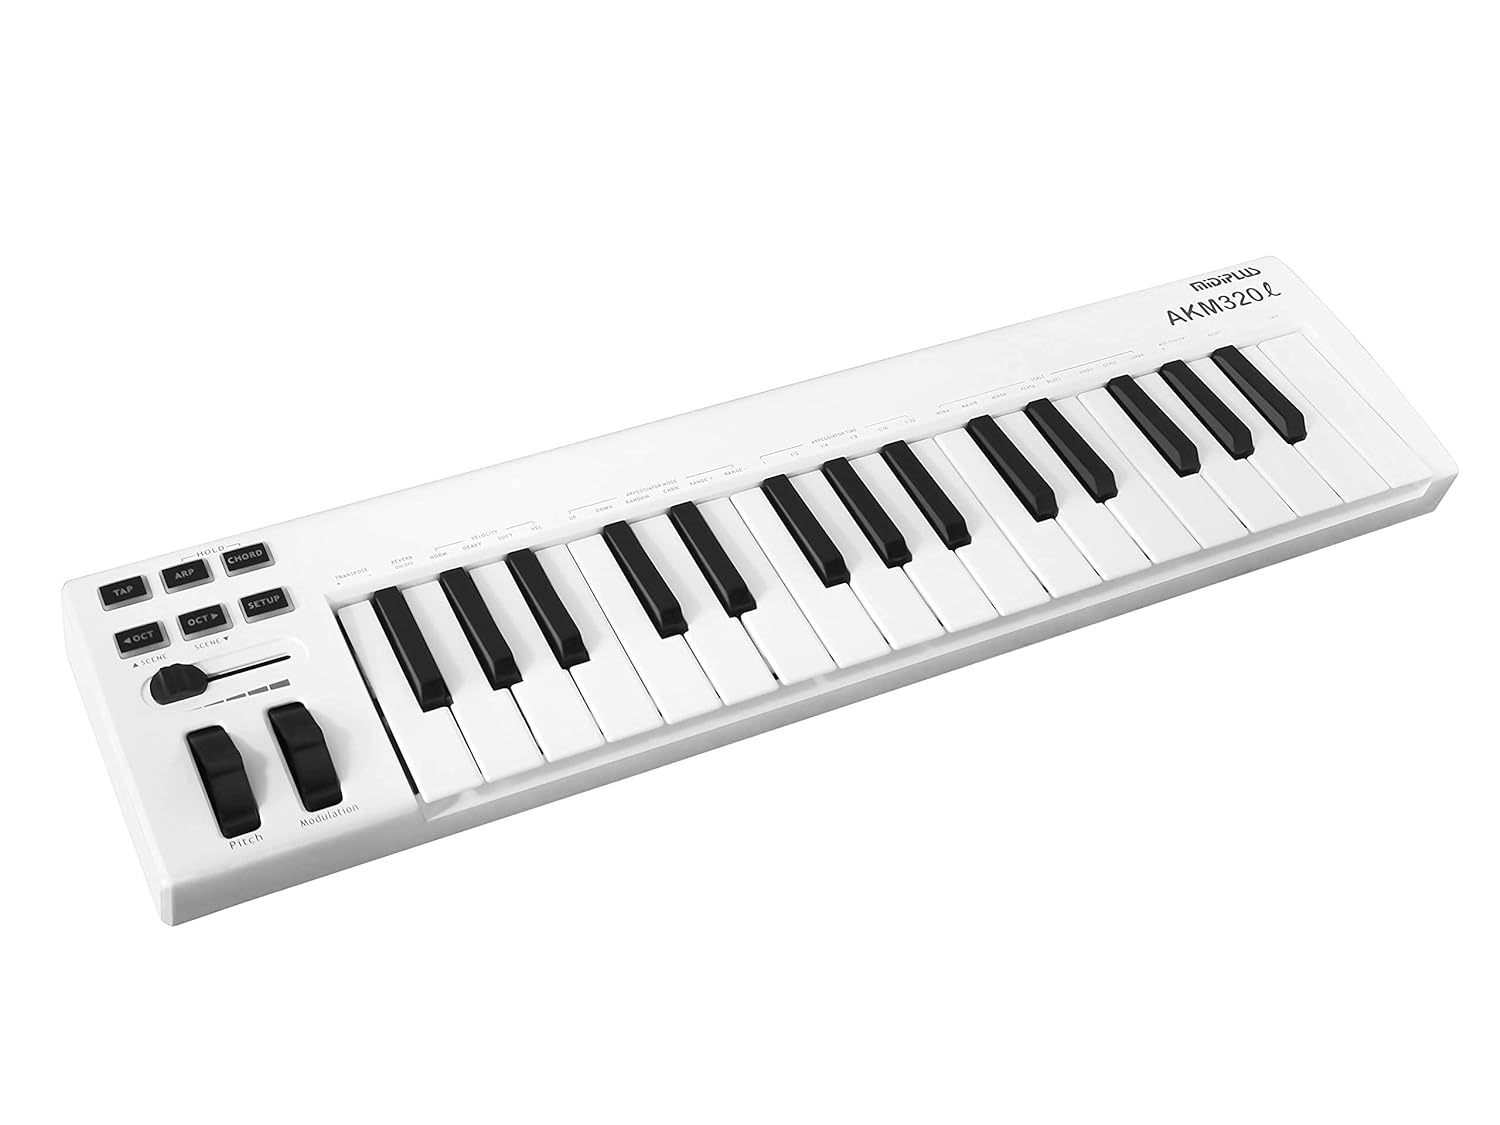 MIDIPLUS AKM320L MIDI Keyboard Controller, white, 32-key